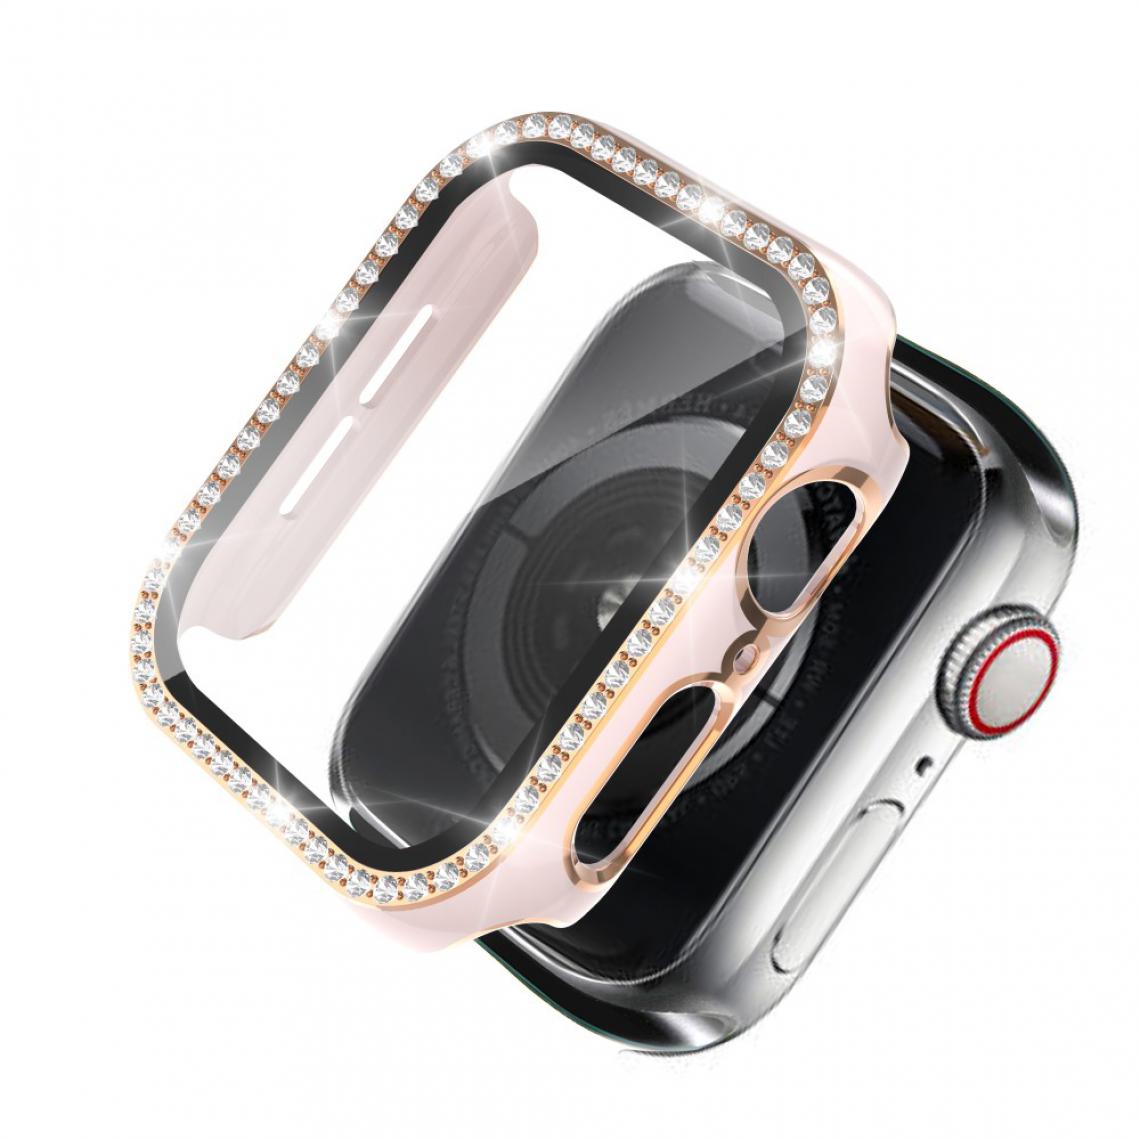 Other - Coque en TPU Cristal de galvanoplastie bicolore rose/or pour votre Apple Watch 1/2/3 38mm - Accessoires bracelet connecté